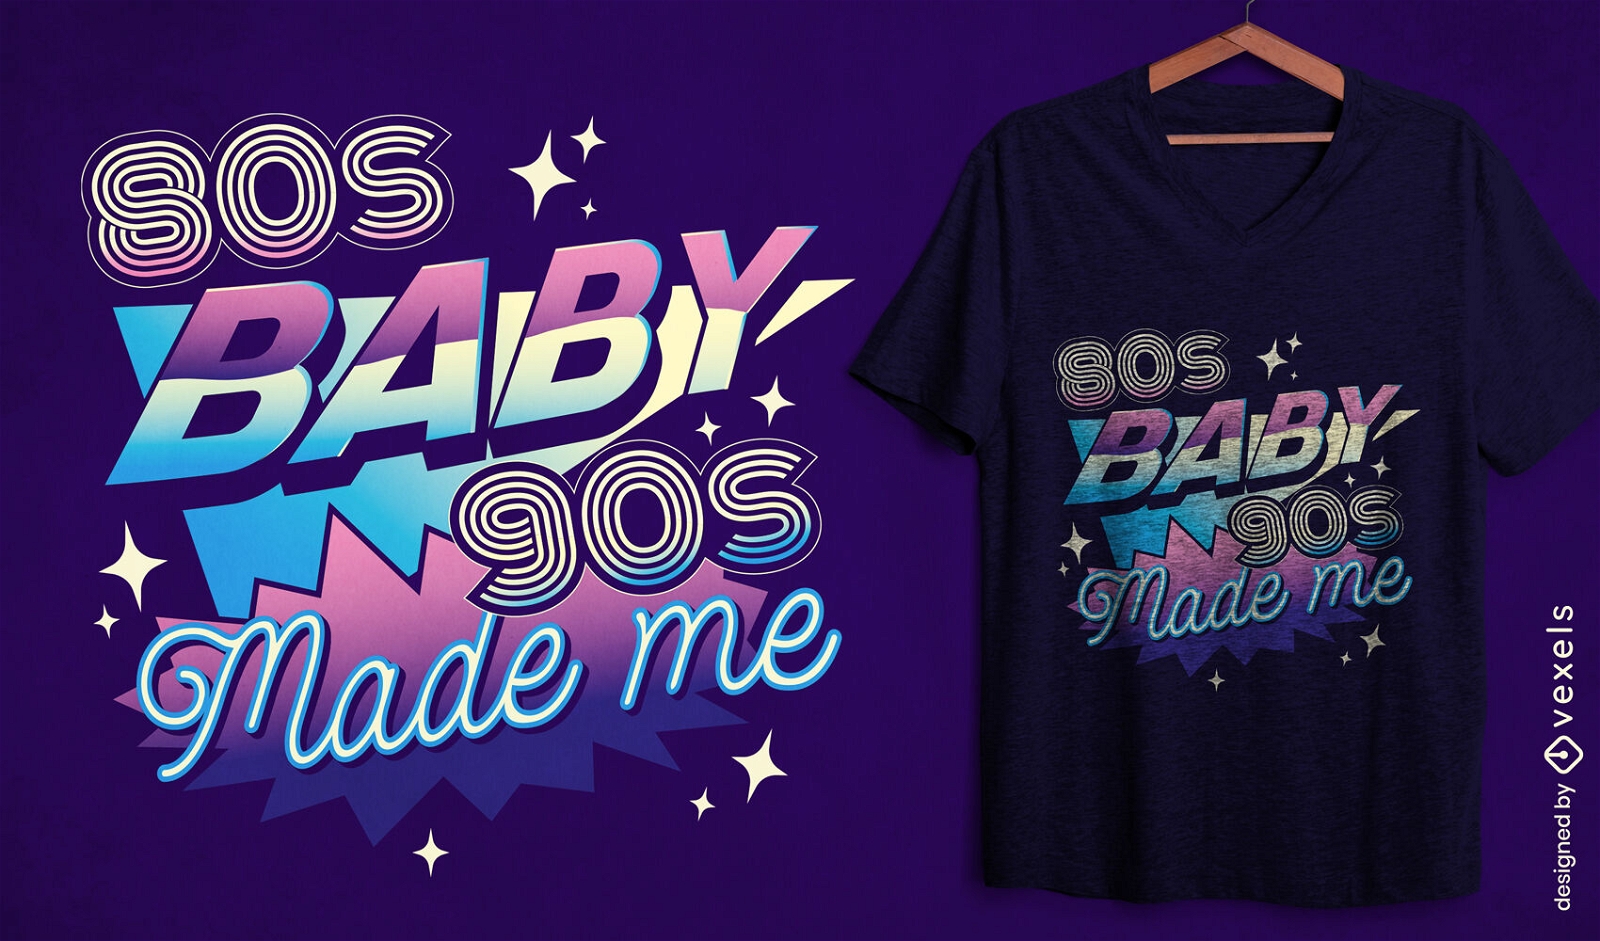 Diseño de camiseta con cita retro de los años 80 y 90.